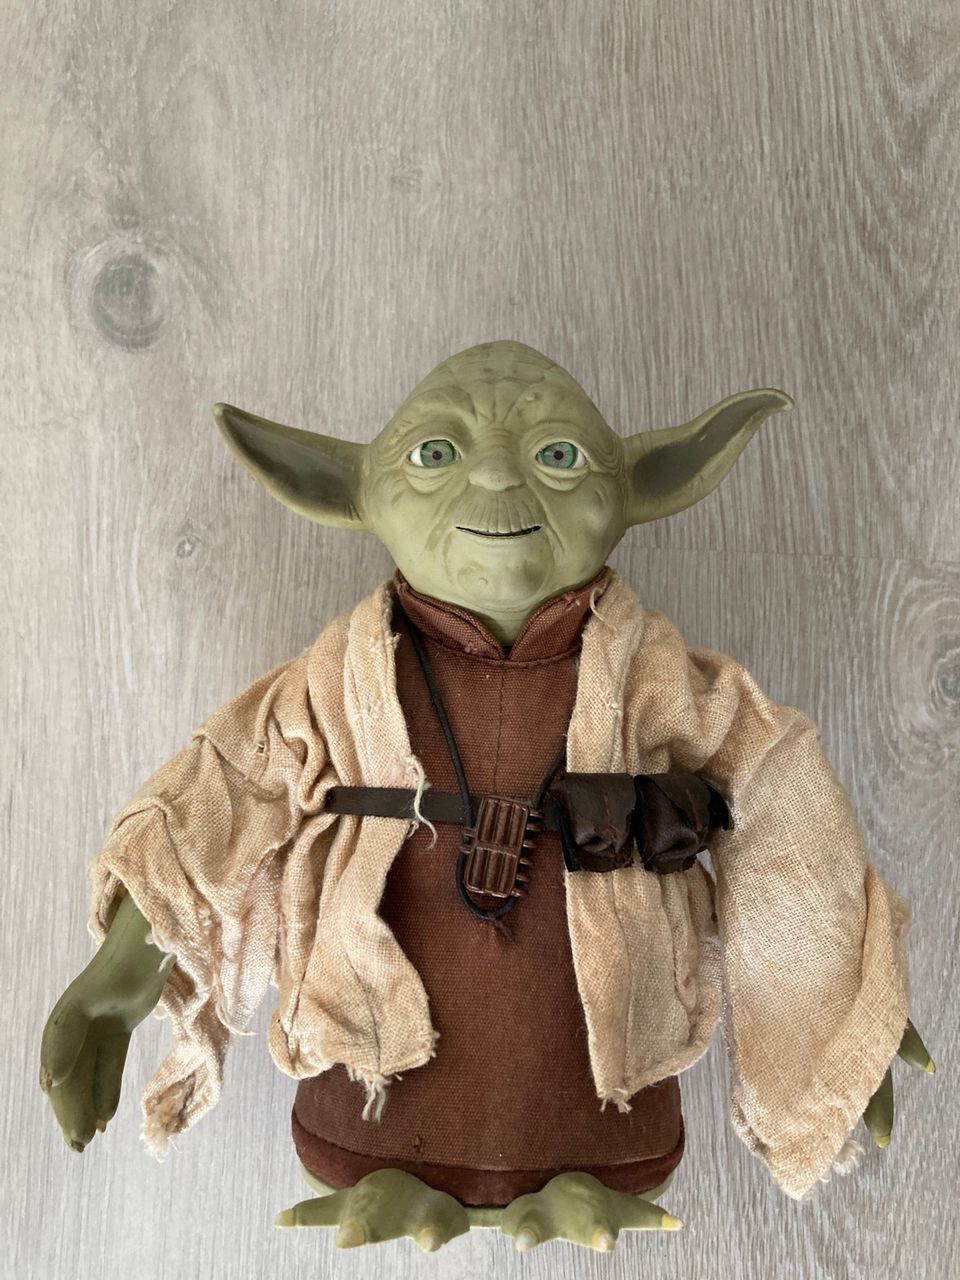 Talking Yoda